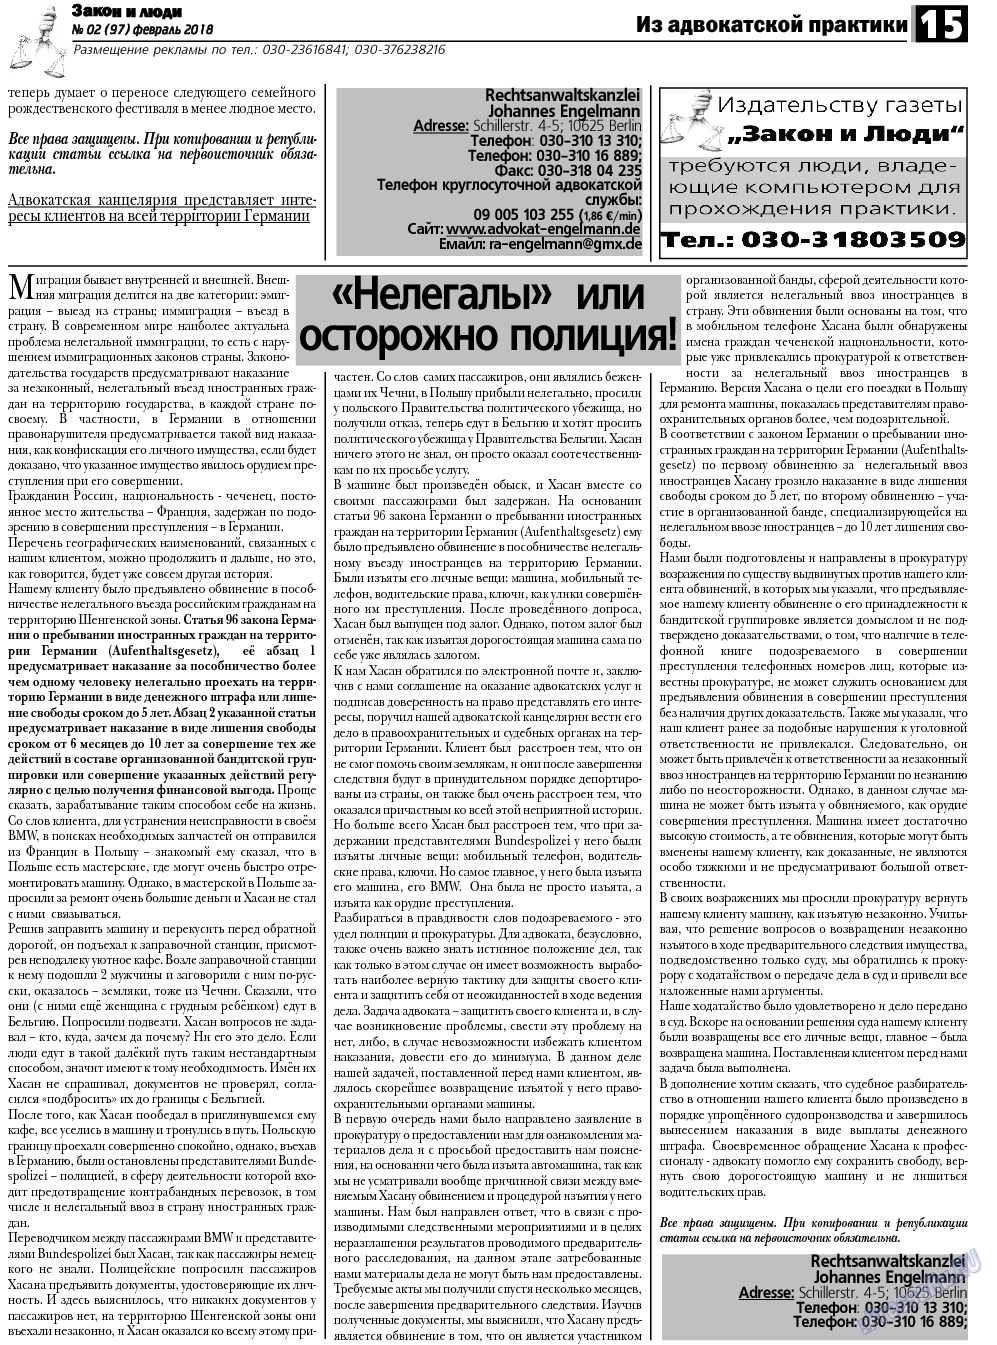 Закон и люди, газета. 2018 №2 стр.15